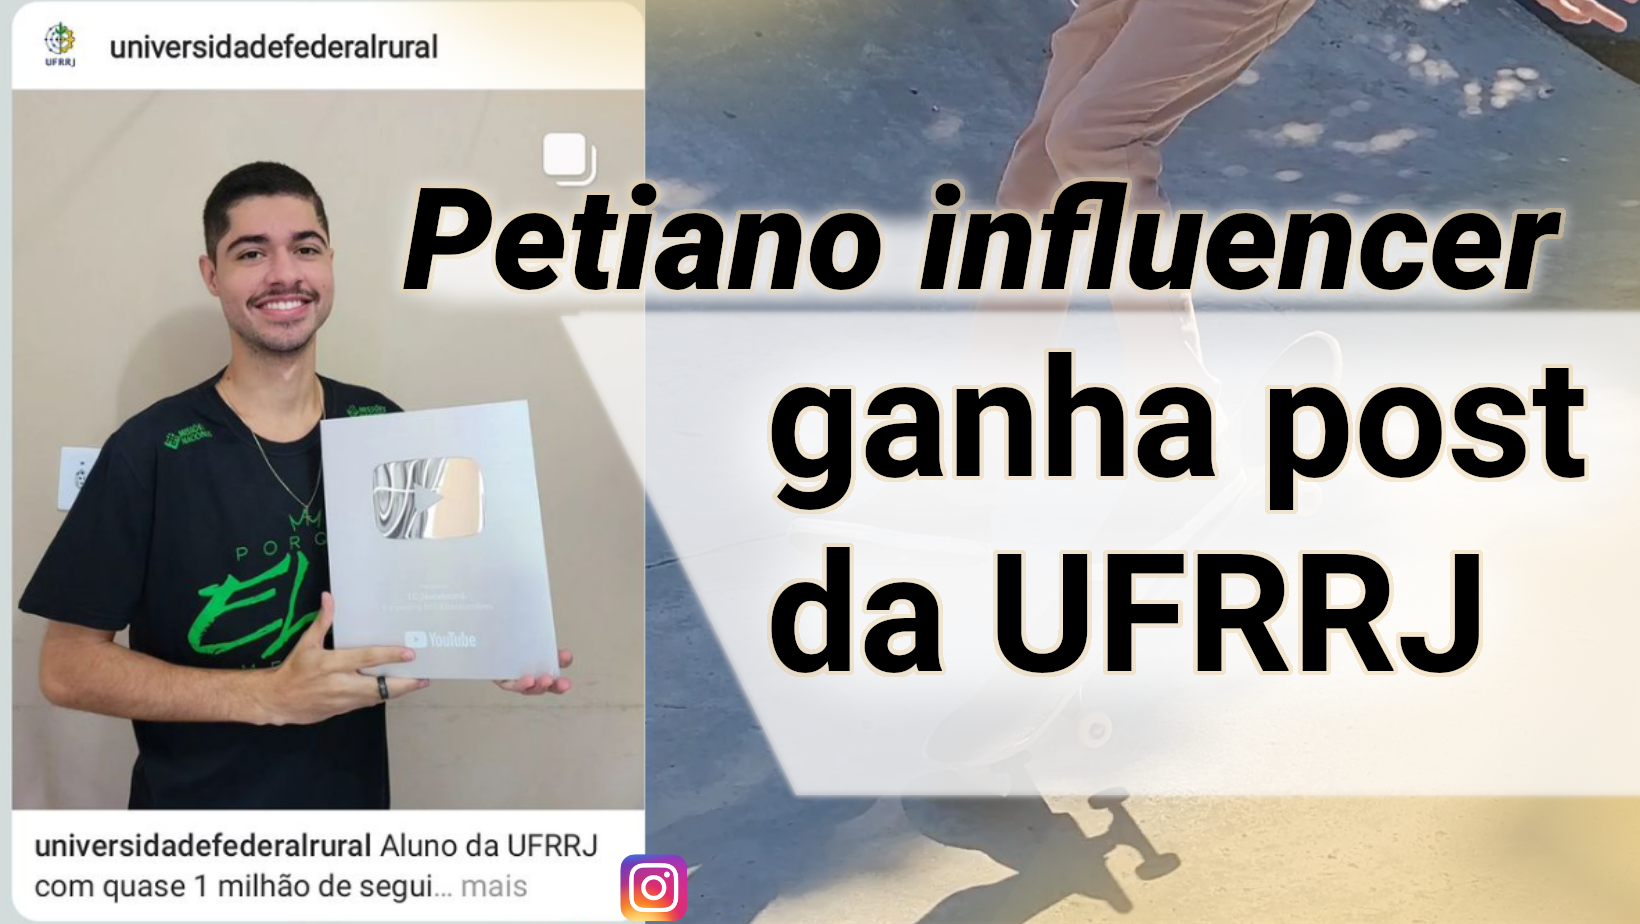 Petiano skatista com quase 1 milhão de seguidores ganha post no instagram da UFRRJ